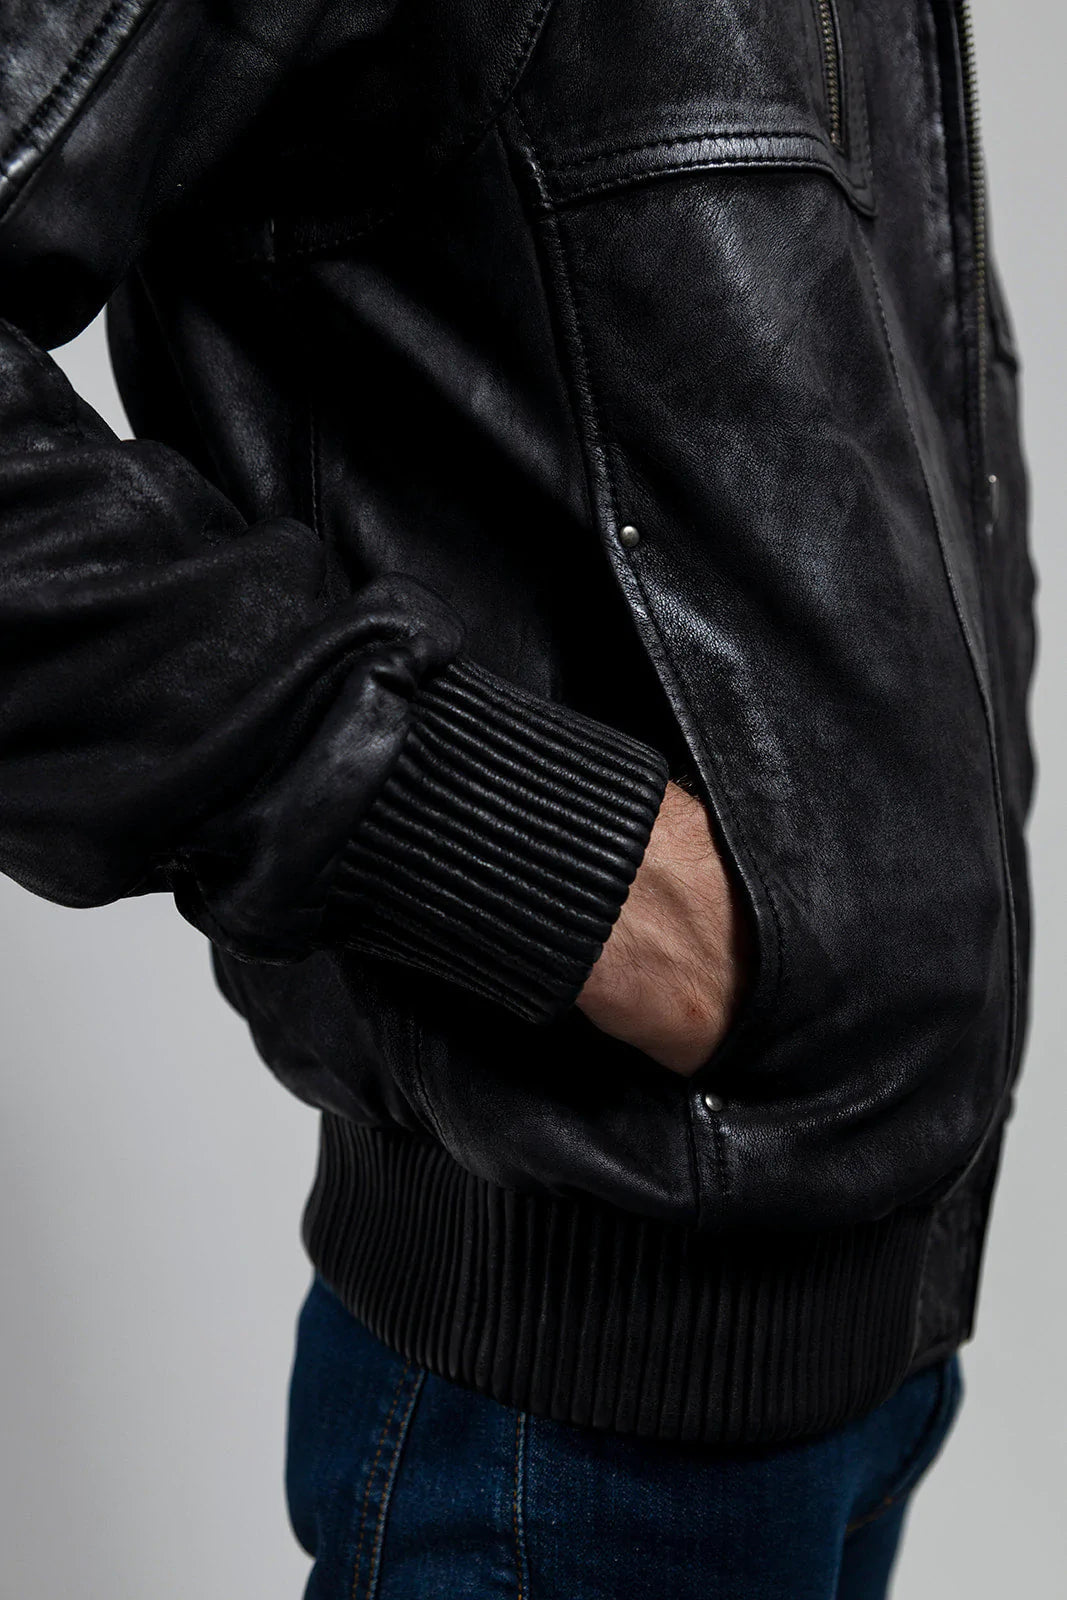 William Mens Fashion Leather Jacket